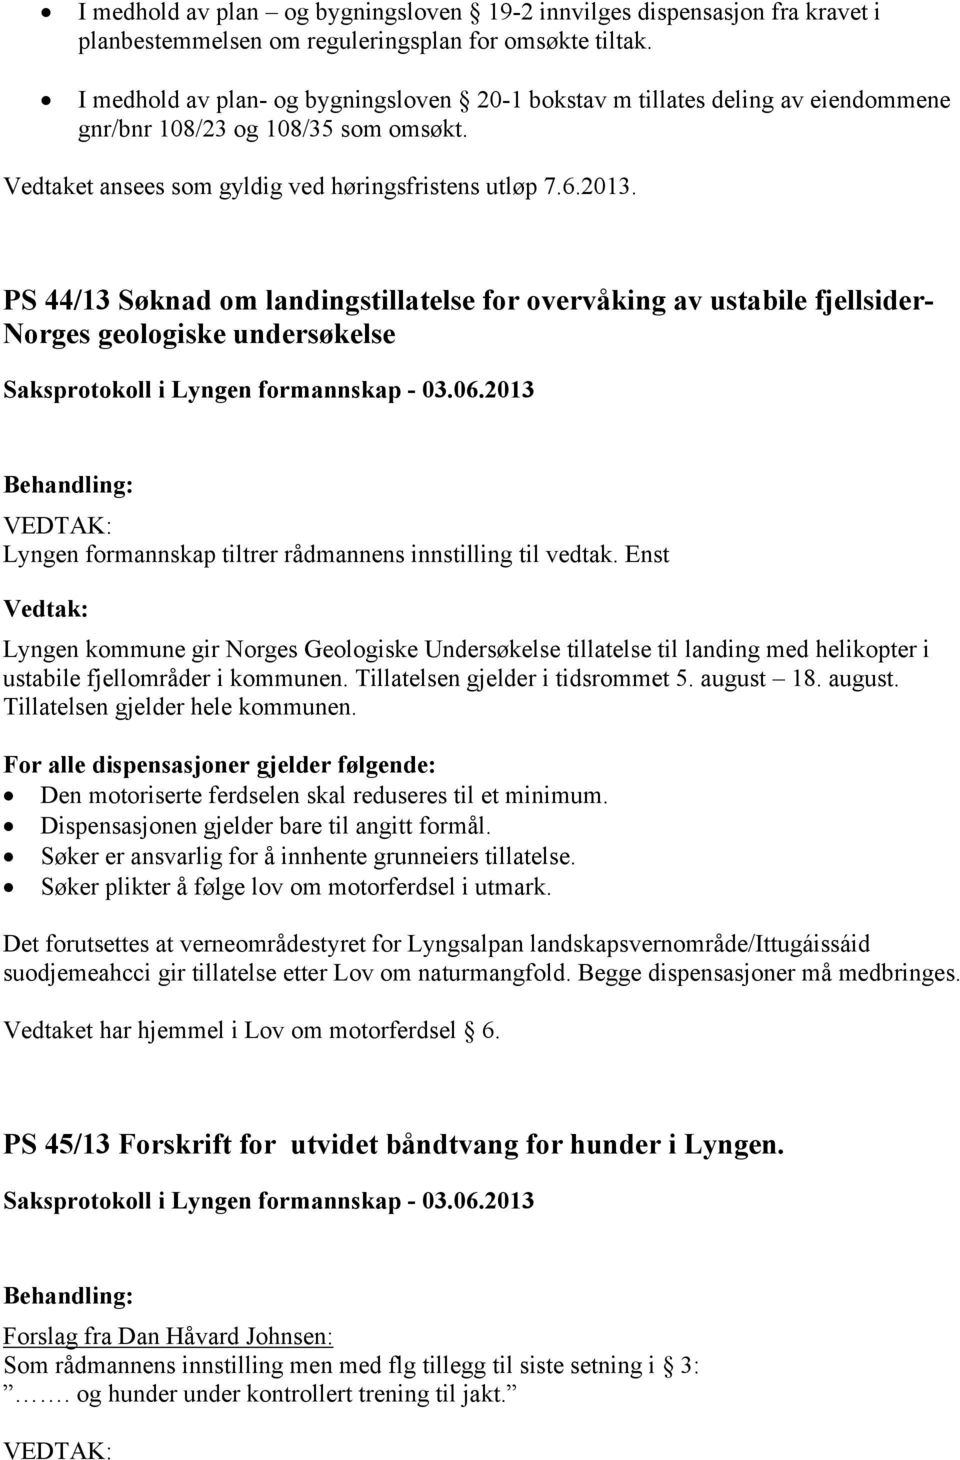 PS 44/13 Søknad om landingstillatelse for overvåking av ustabile fjellsider- Norges geologiske undersøkelse Lyngen formannskap tiltrer rådmannens innstilling til vedtak.